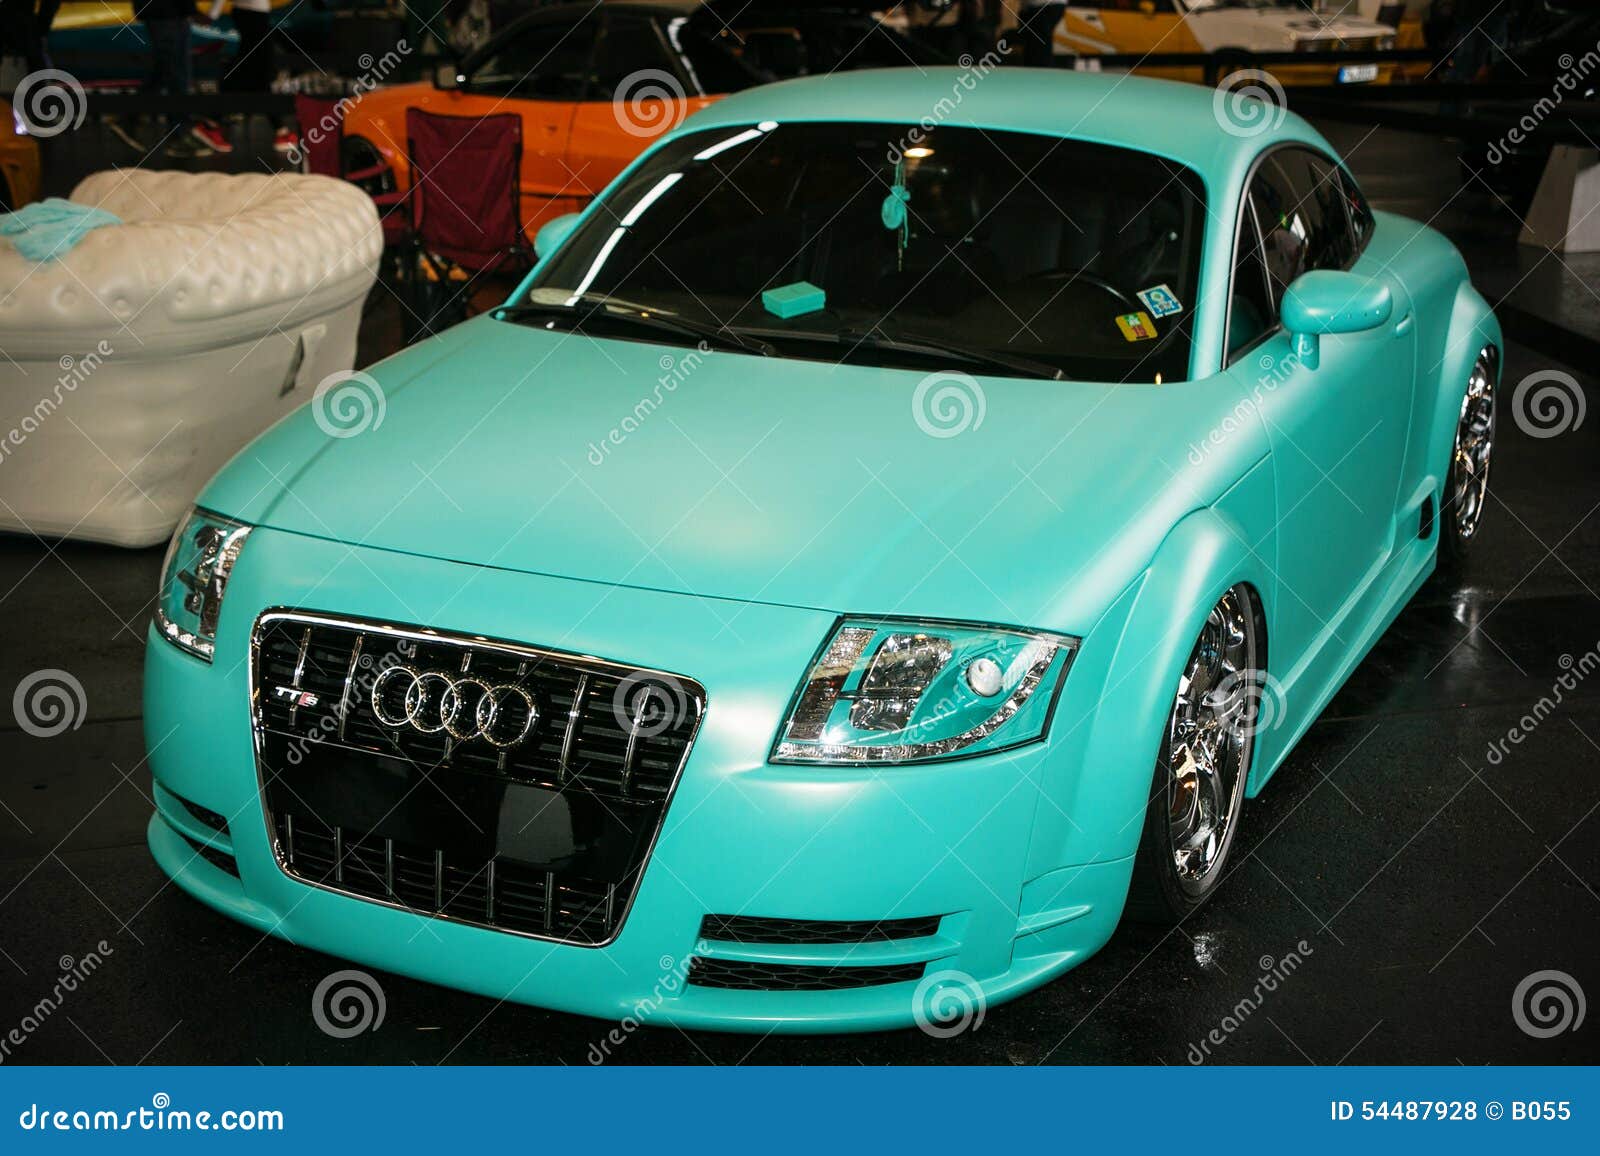 natuurlijk Maak plaats verwerken Turquoise Car editorial stock photo. Image of color, germany - 54487928